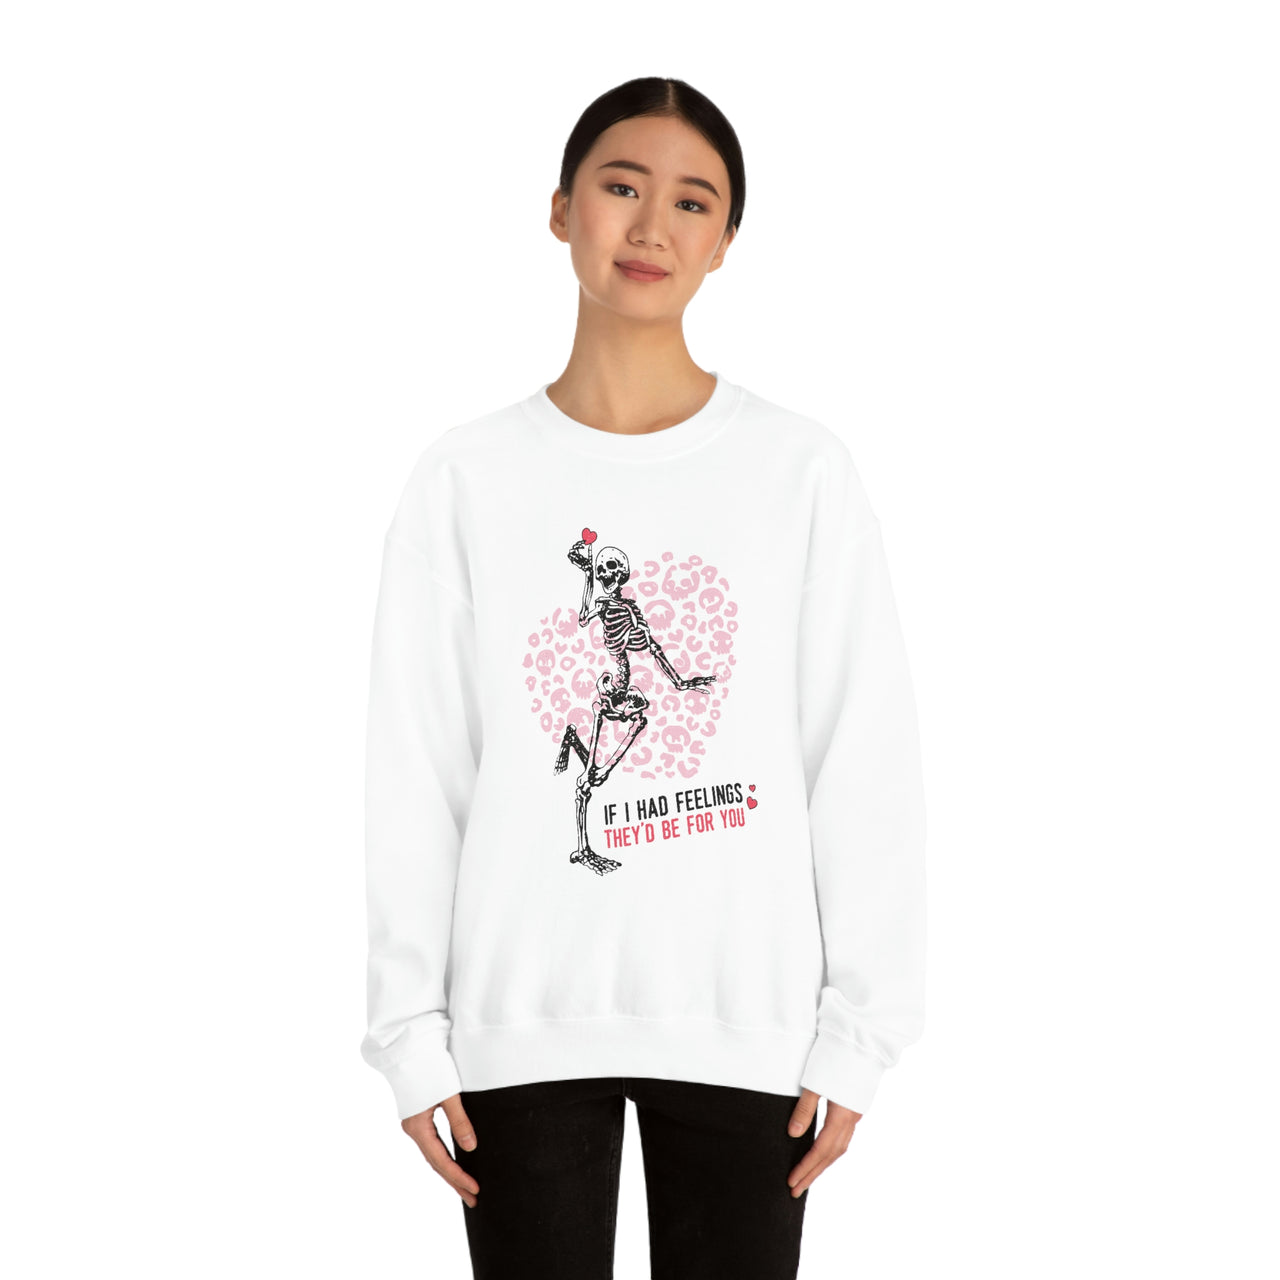 Skeleton Valentine's Day Sweatshirt, Valentine Sweater, Skull Sweatshirt, Funny Valentines Day Sweatshirt, Fun Valentine Sweatshirt